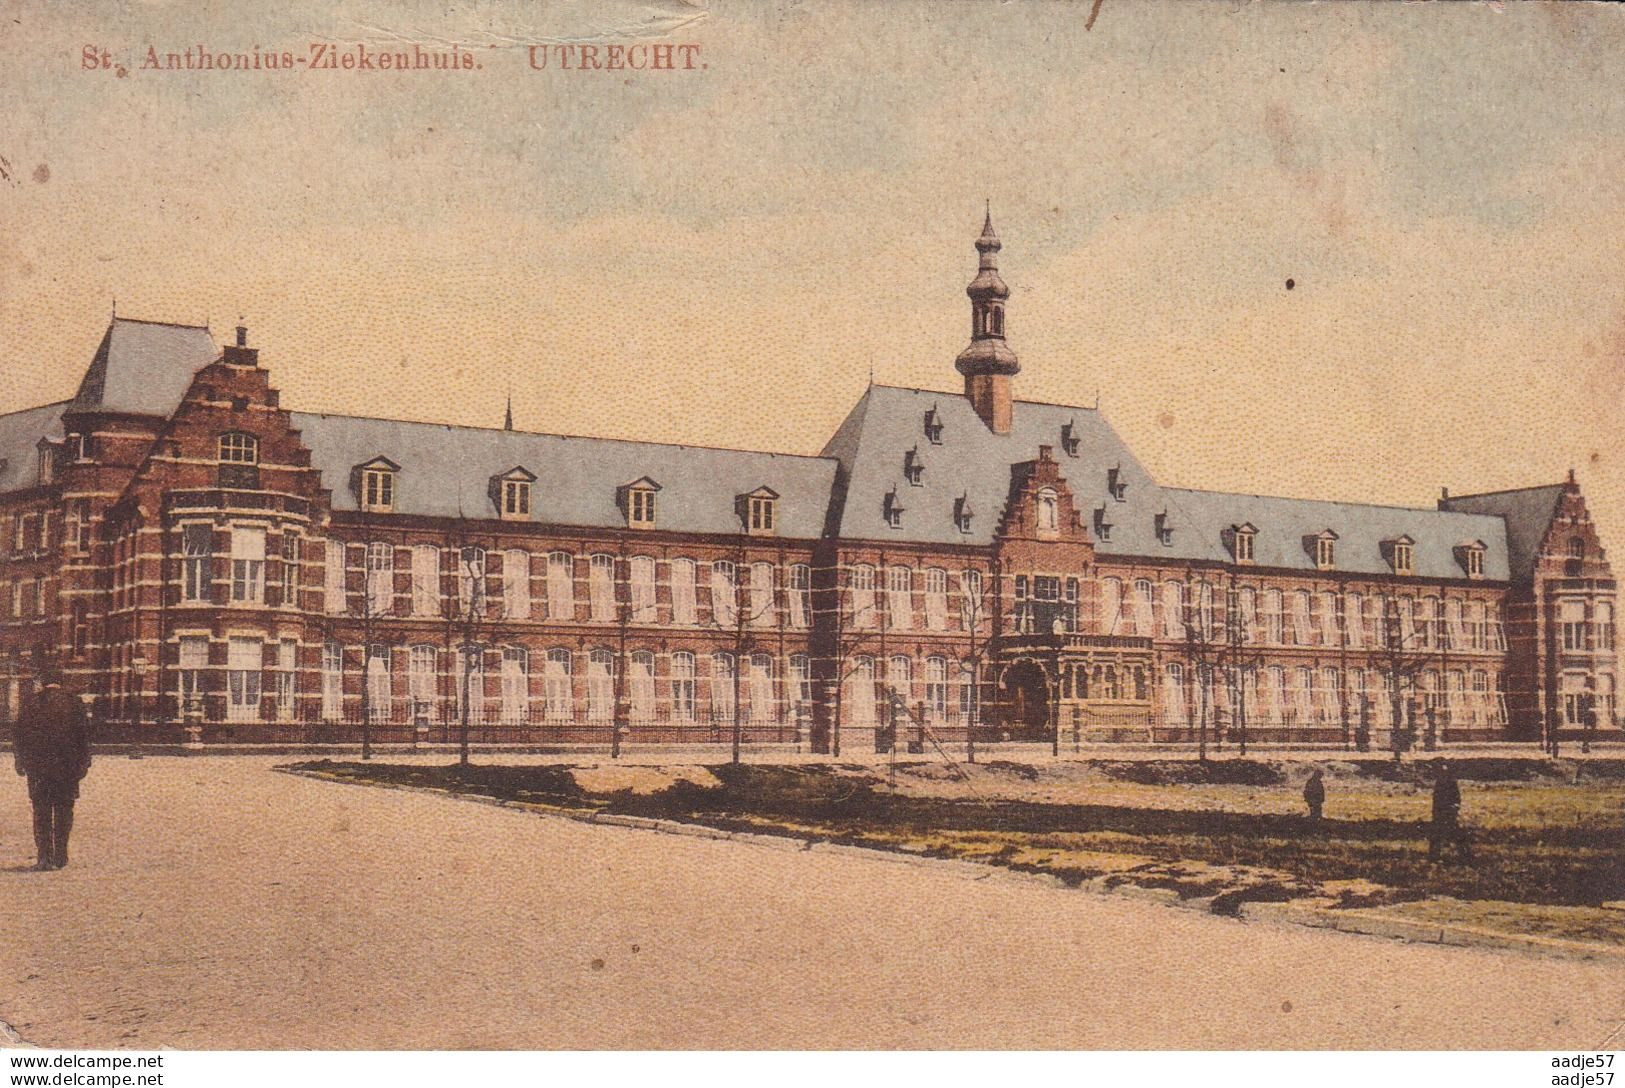 Utrecht St. Anthonius-Ziekenhuis 1912 - Utrecht